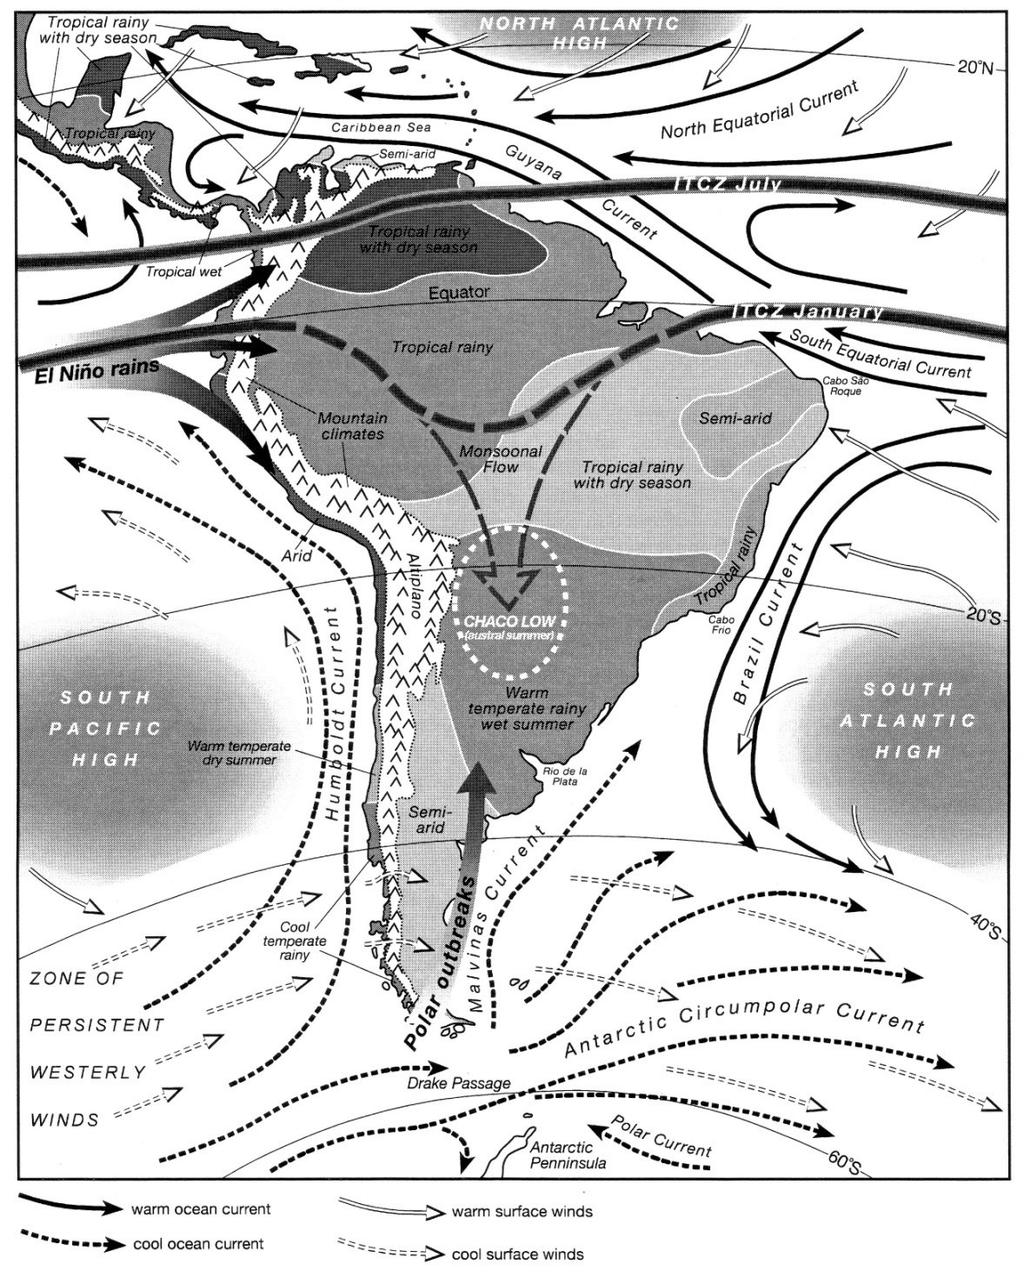 2 Situación climática en los Andes clima actual 3 Clima principal causado por: variación de la ITCZ: verano meridional hacia sur (~ 15 S) y invierno meridional hacia norte (~ 10 N) variación de los